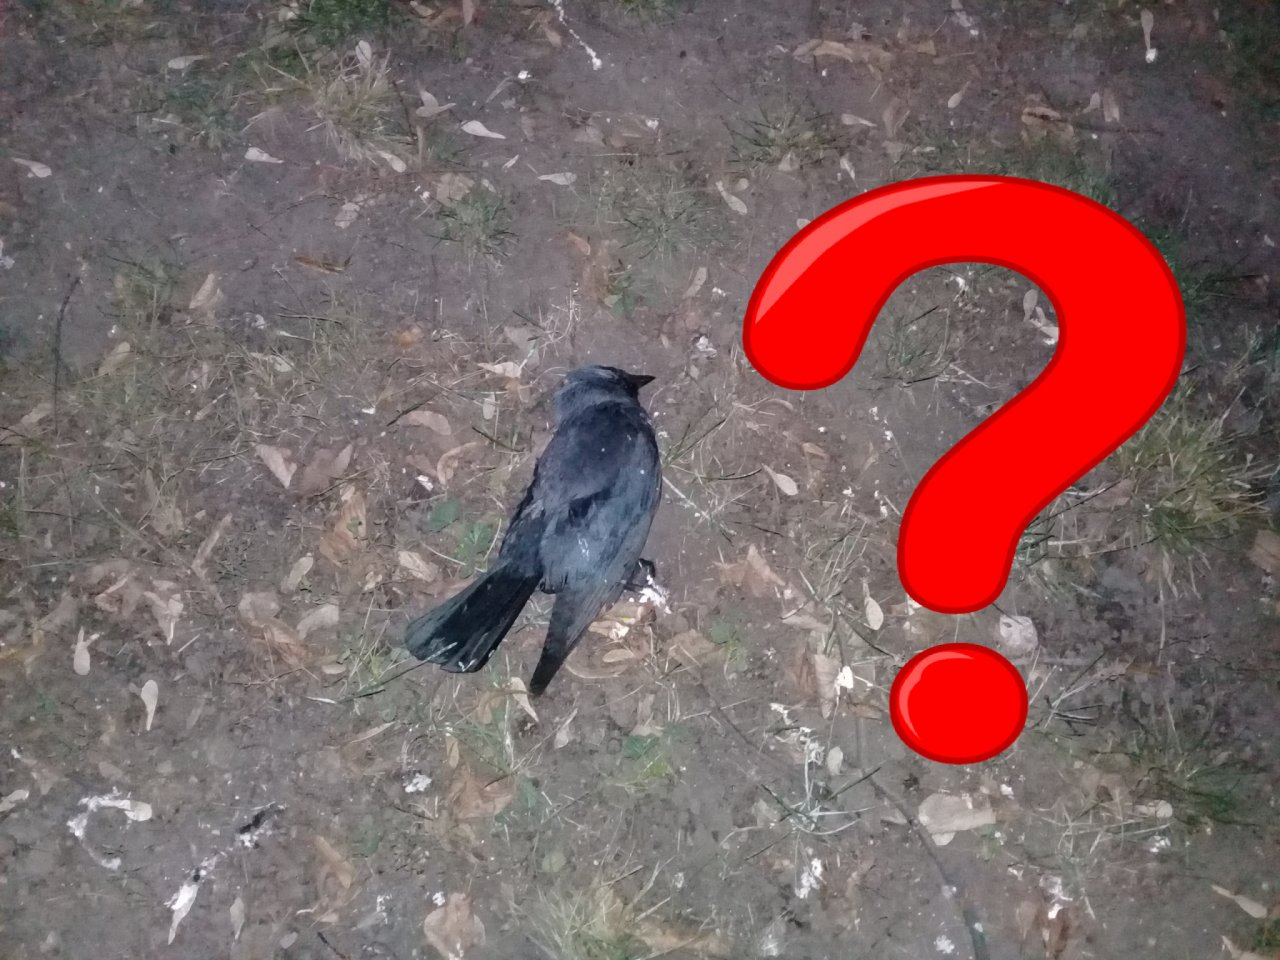 Причина смерти птиц - не в воздухе: как это аргументирует рязанское Управление ветеринарии